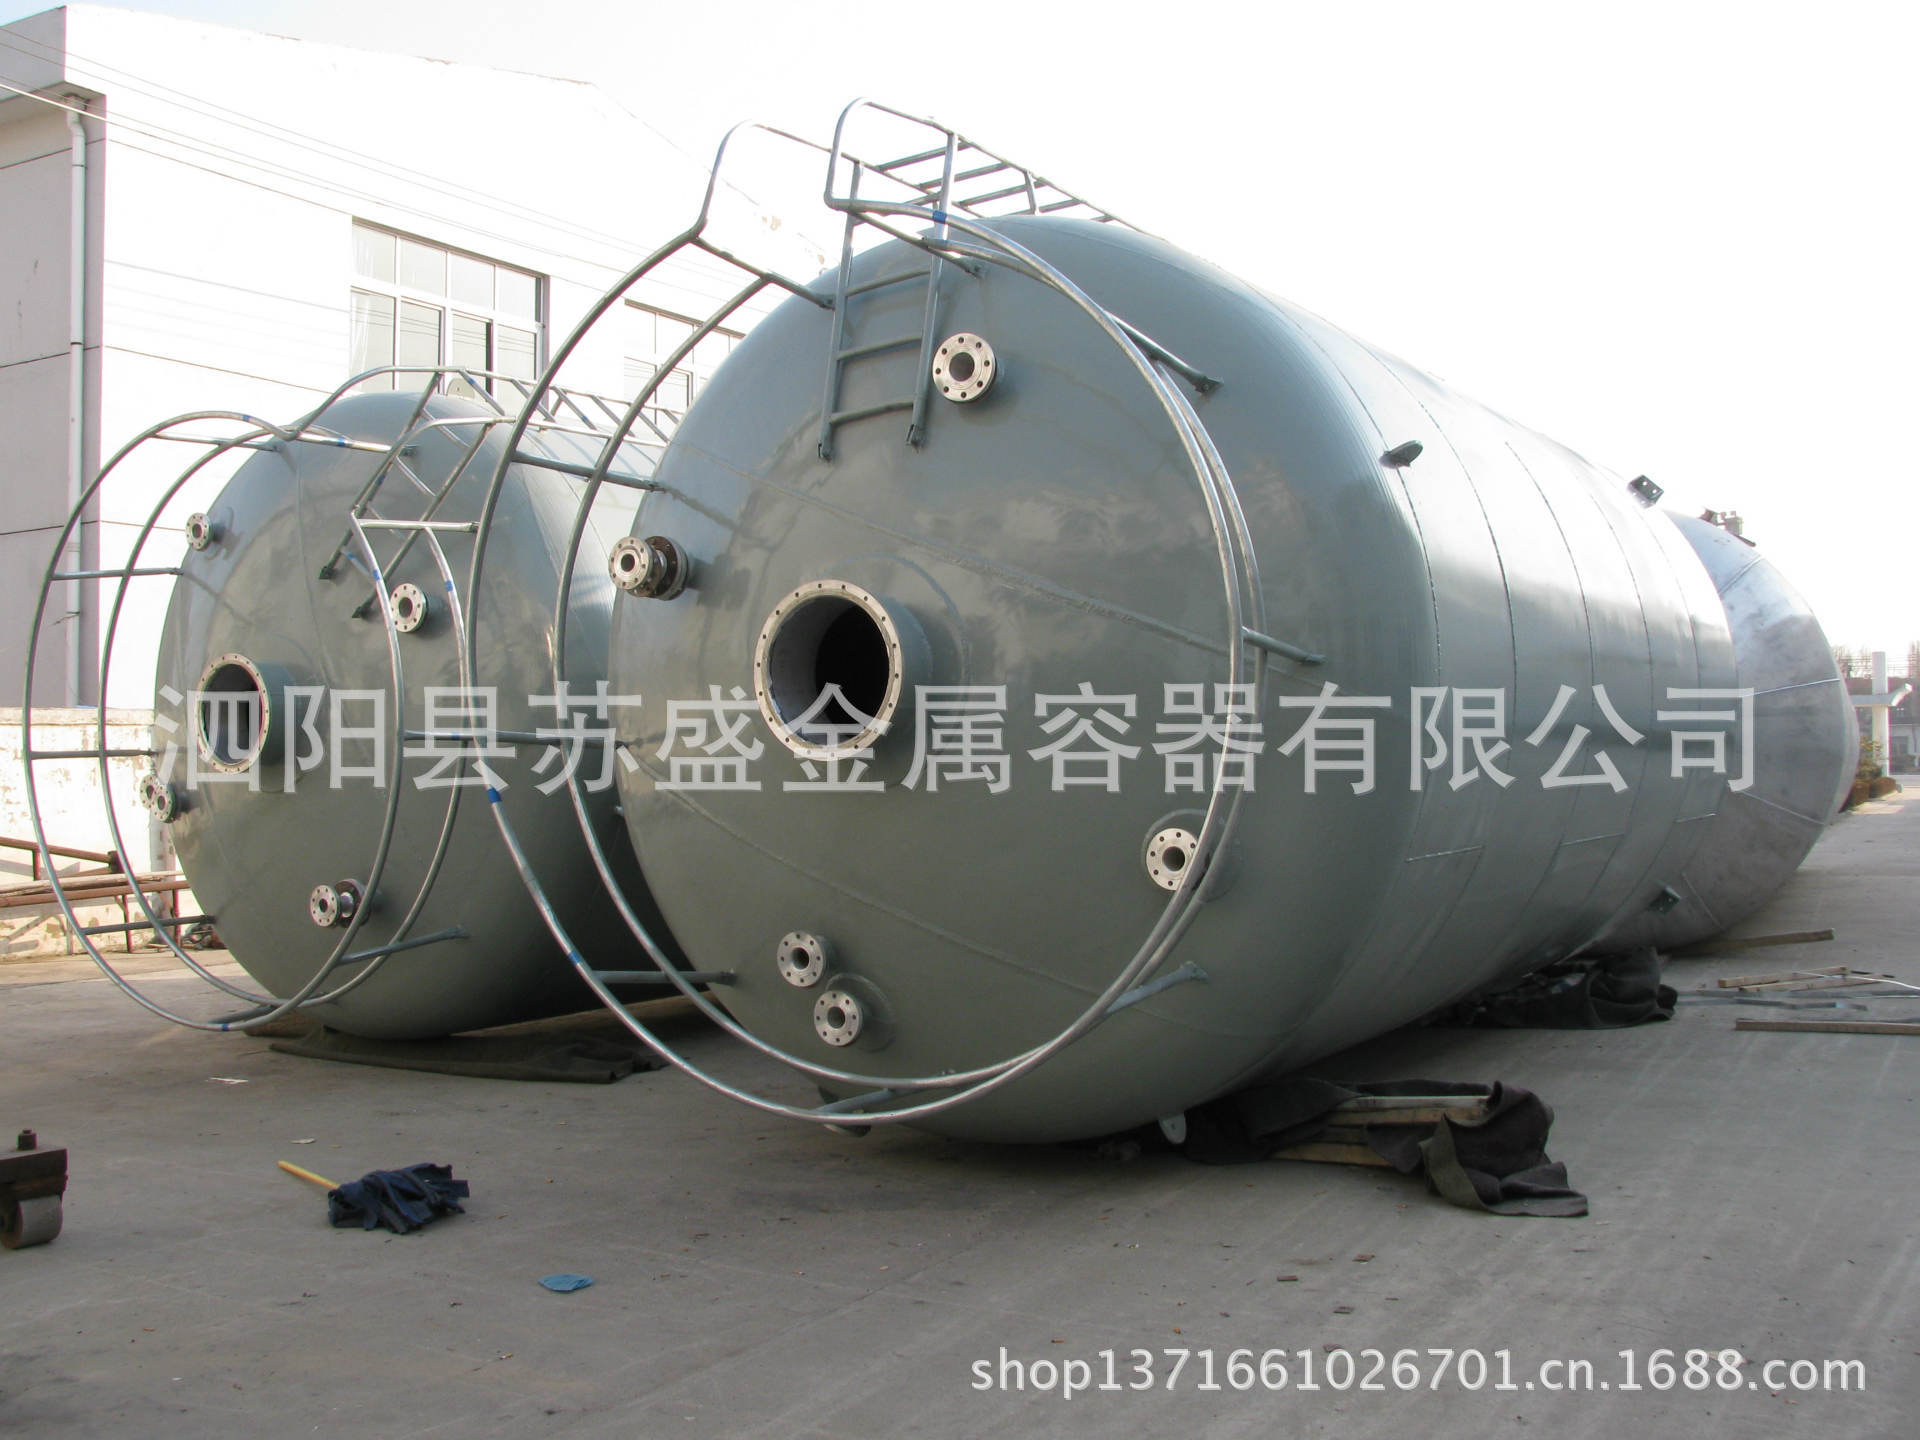 75立方米立式浓铝储罐 苏盛化工金属容器 厂家直销